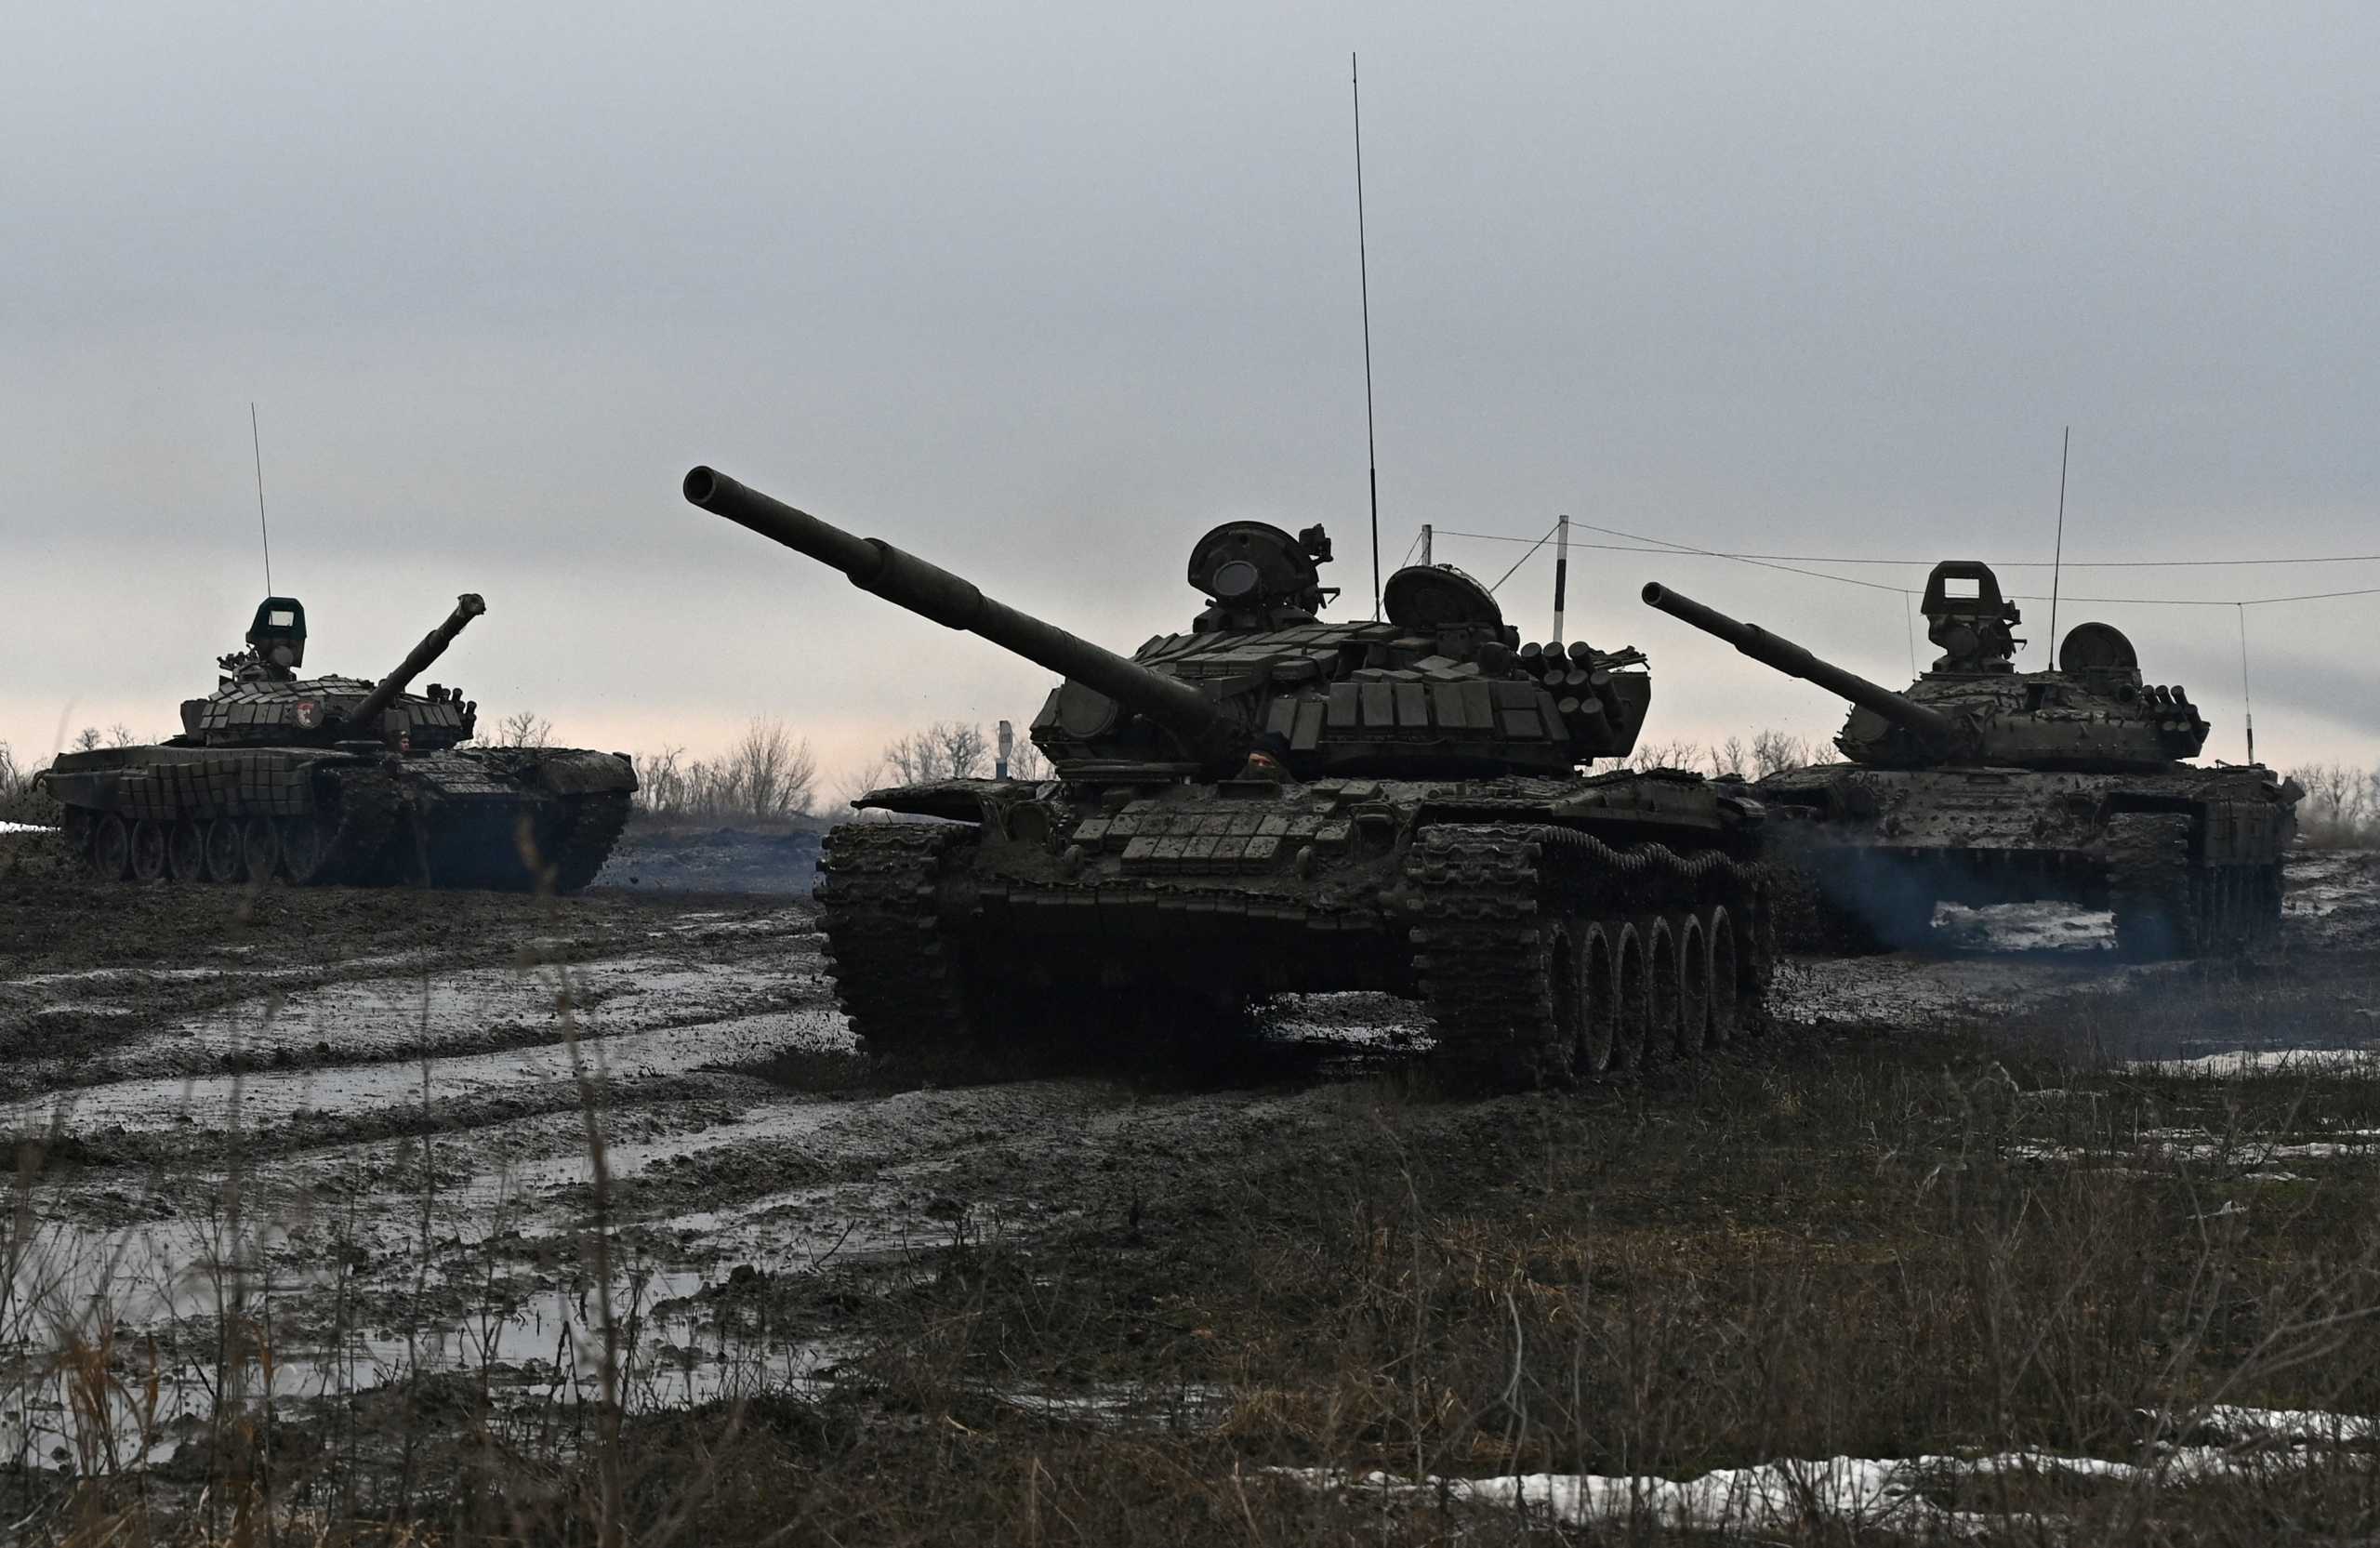 Πόλεμος στην Ουκρανία: Η Γερμανία στέλνει βαριά όπλα κάνοντας στροφή 180 μοιρών – Αυτά είναι τα επιθετικά όπλα